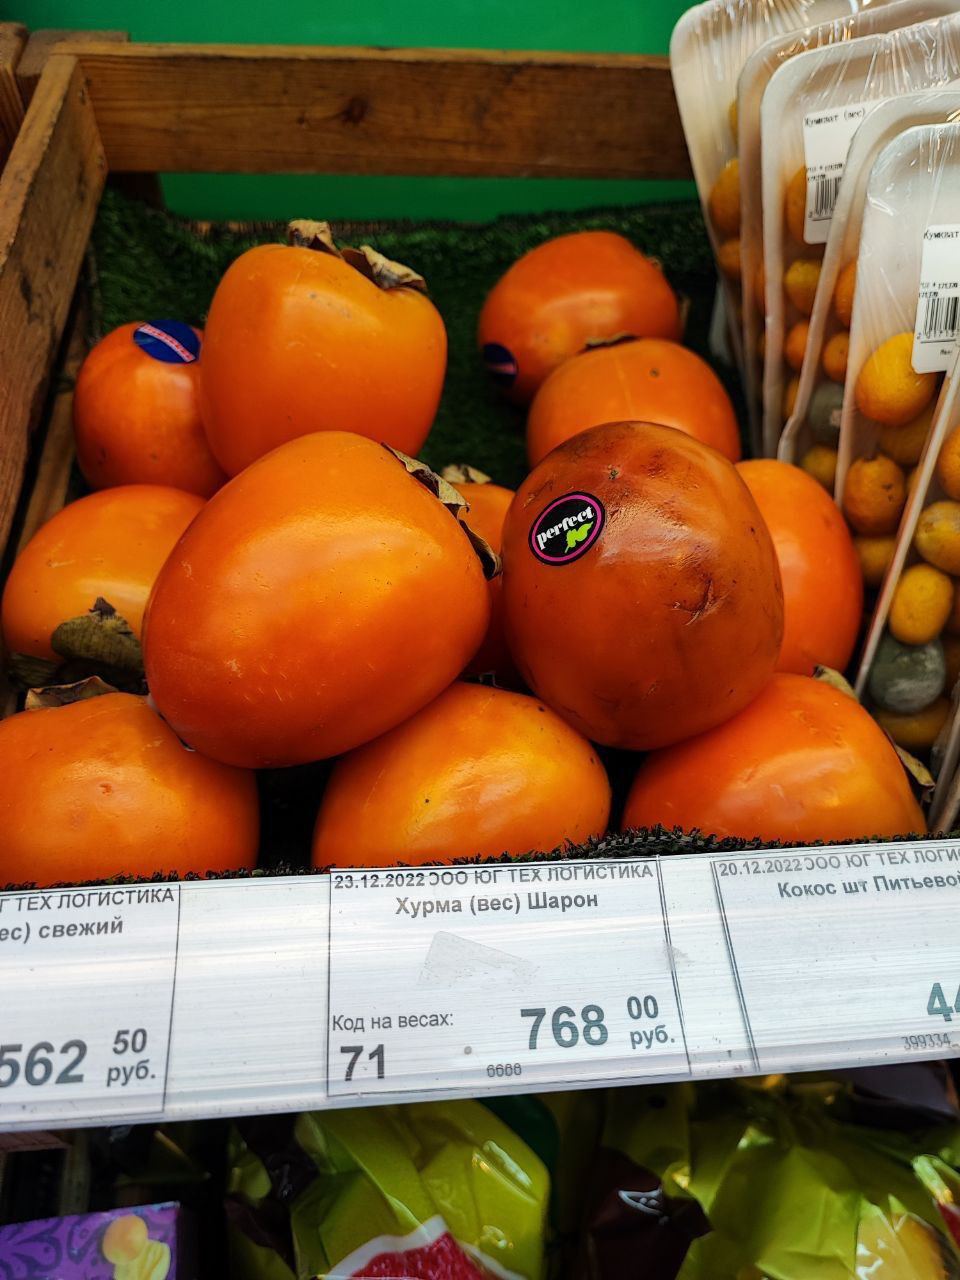 Цены на фрукты зашкаливают - килограмм хурмы (в пересчете - 414 грн). Фото: ТГ-канал 